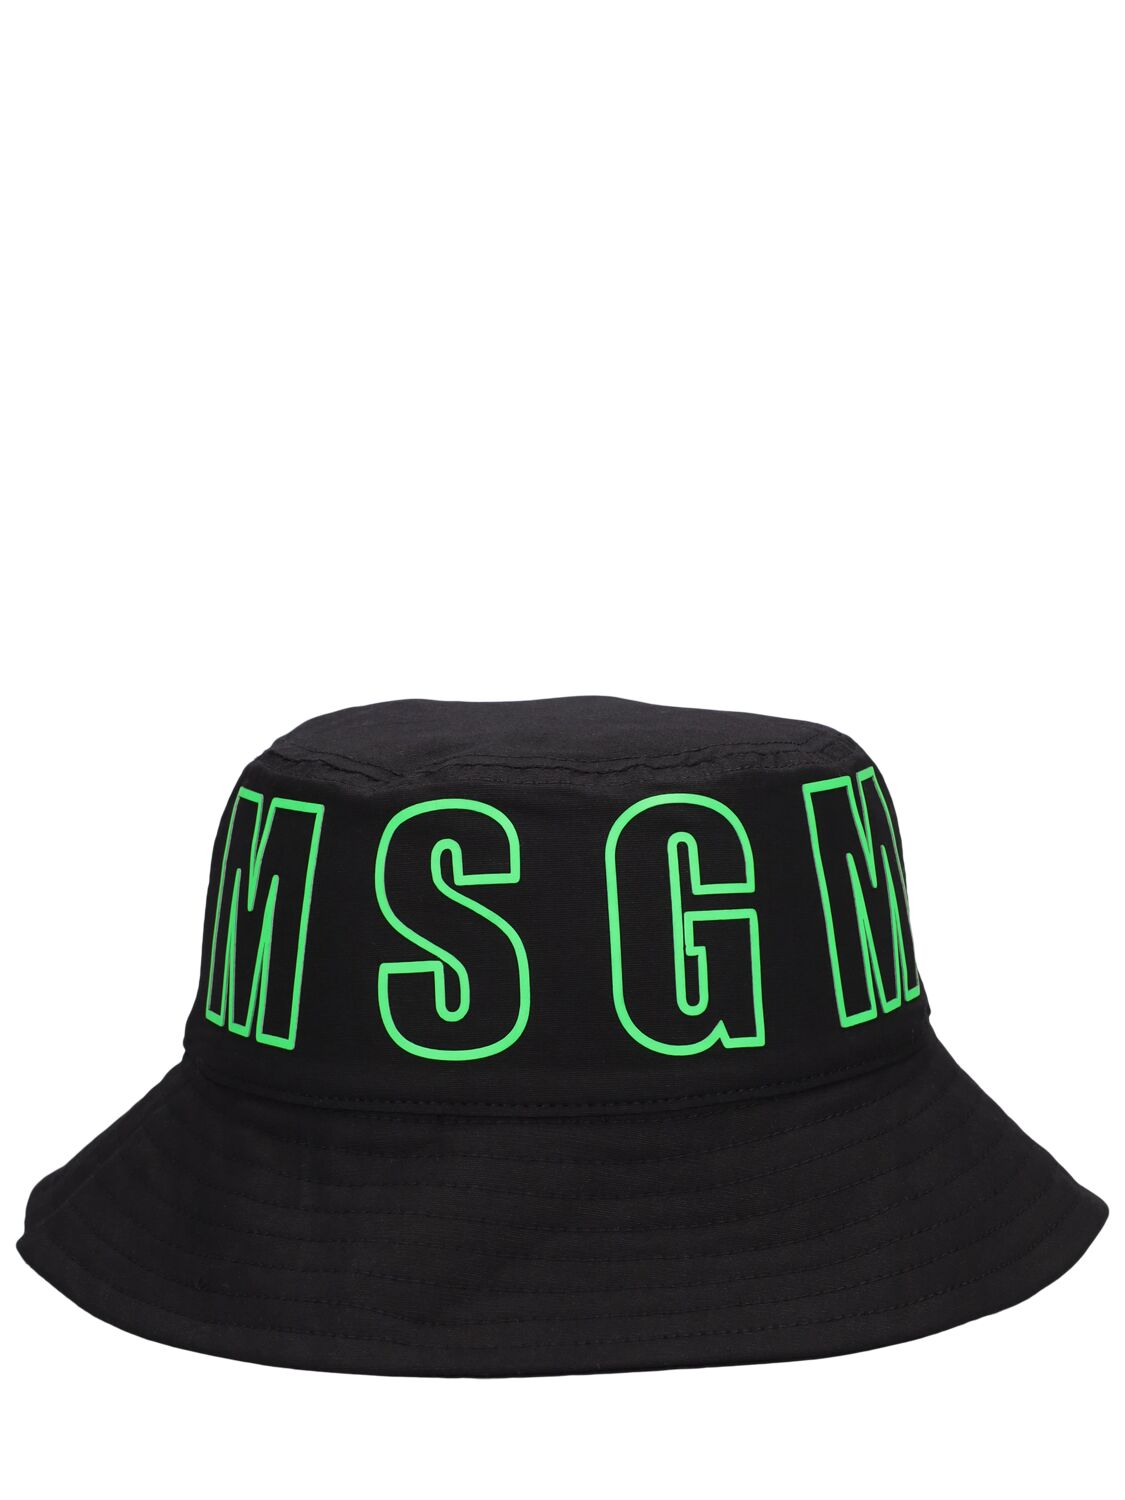 Msgm Kids' Cotton Bucket Hat In Black